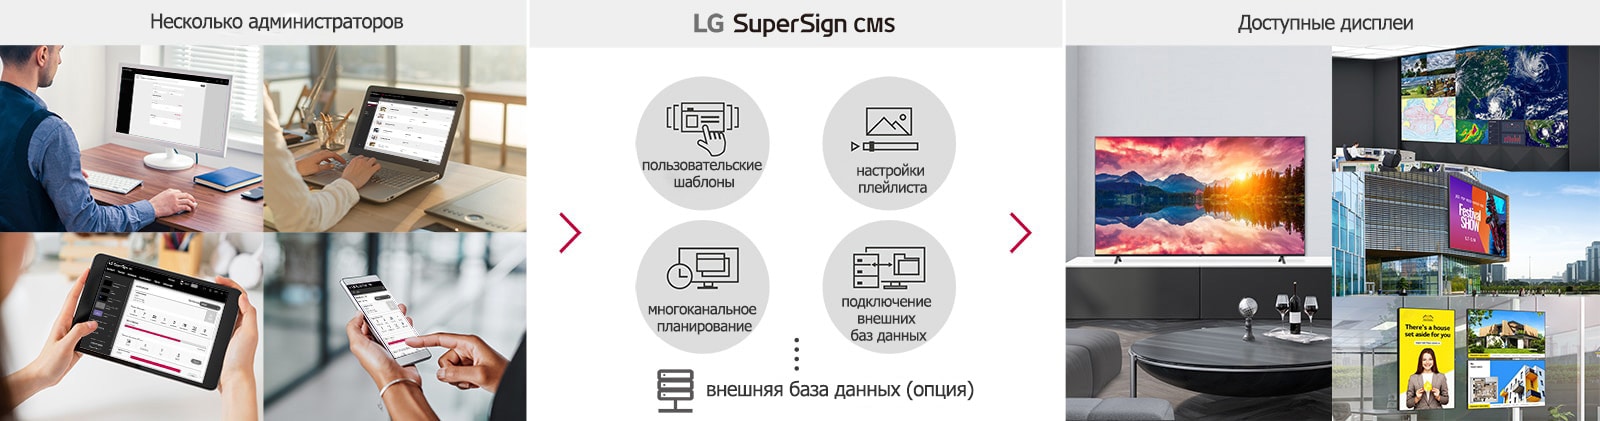 Несколько администраторов могут использовать CMS LG SuperSign с ПК, ноутбука, планшета и мобильных устройств для создания, настройки и распределения цифрового контента, подготовленного для разных дисплеев.